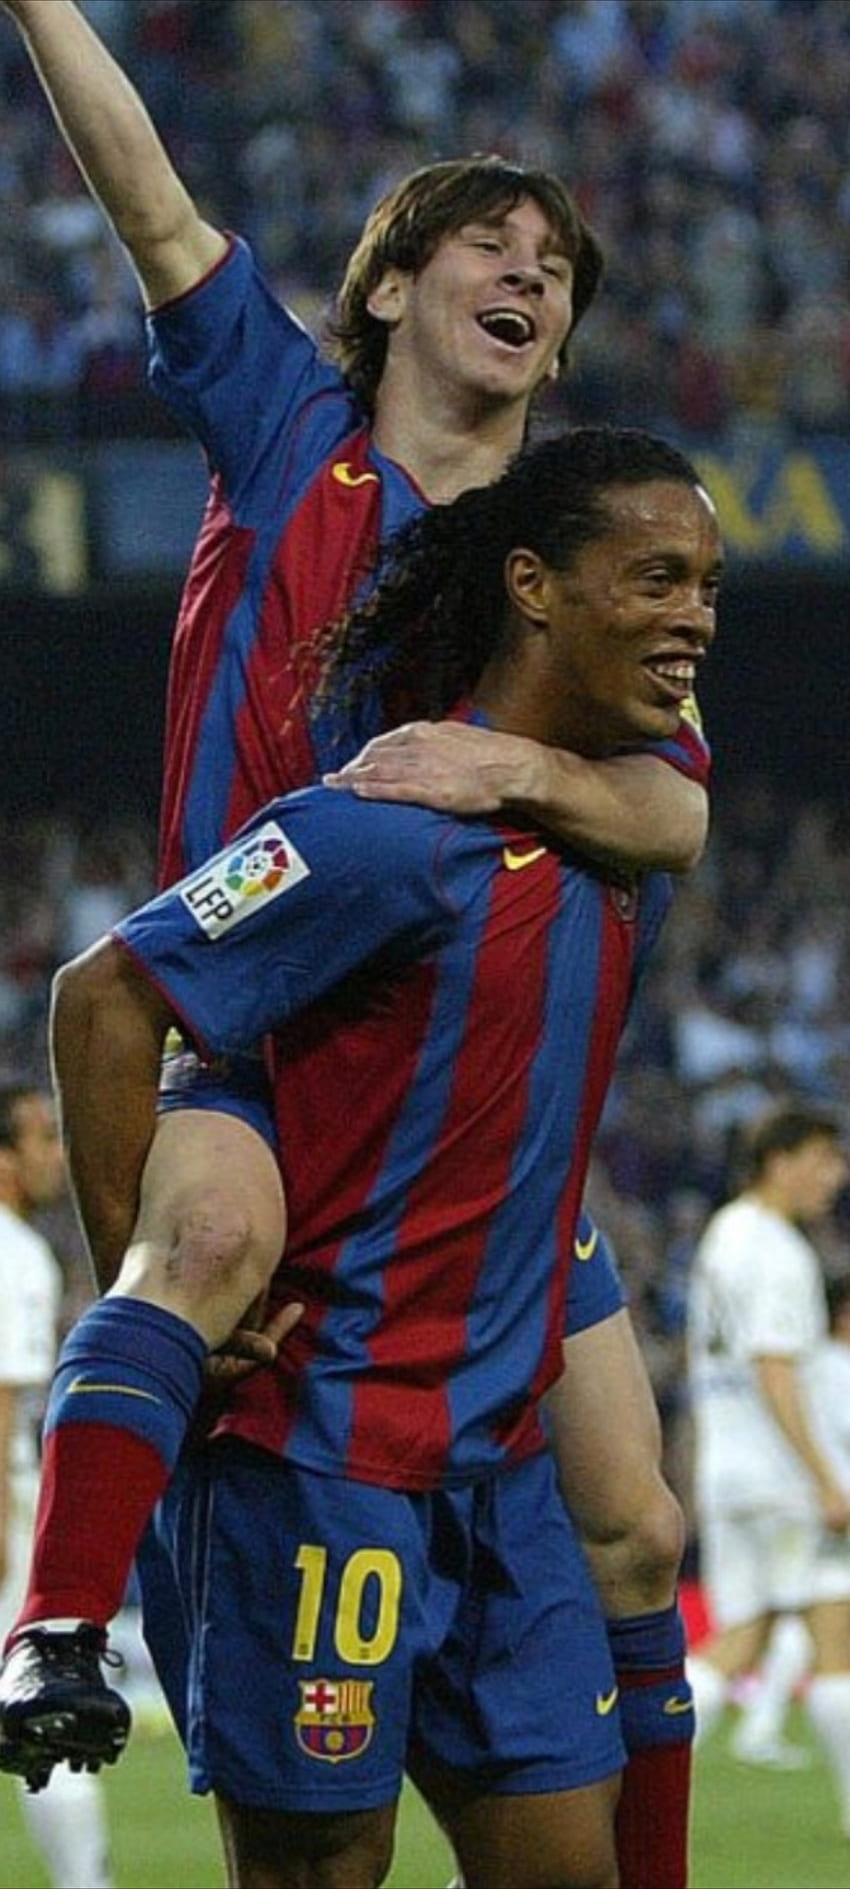 Với hình nền Messi và Ronaldinho, bạn sẽ cảm thấy như được chứng kiến sự giao hữu đầy kỳ diệu giữa hai cảnh sát cổ động của bóng đá! Họ là những tay chơi điêu luyện trong môn thể thao vua và mỗi khi họ gạt gẫm trên sân cỏ, họ mang lại cảm giác mãn nhãn cho người xem. Hãy đón xem hình nền đầy cảm hứng này ngay bây giờ!